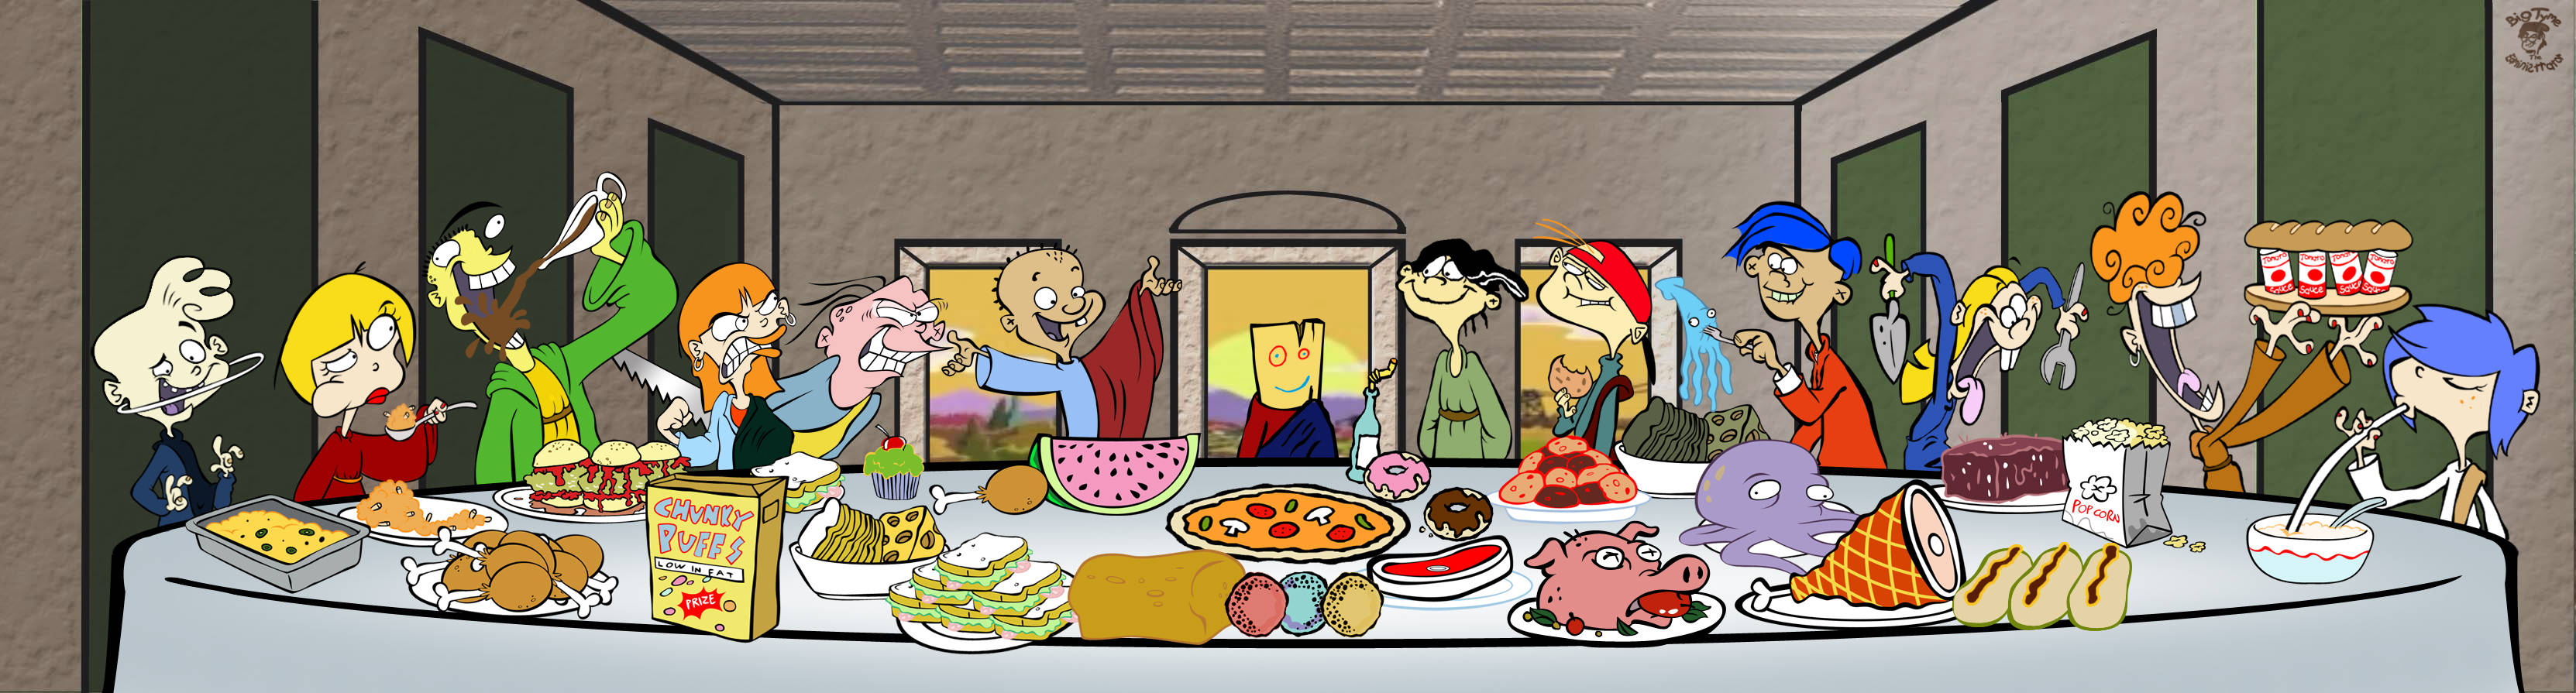 Ed, Edd N Eddy - The Last Supper Parody Background